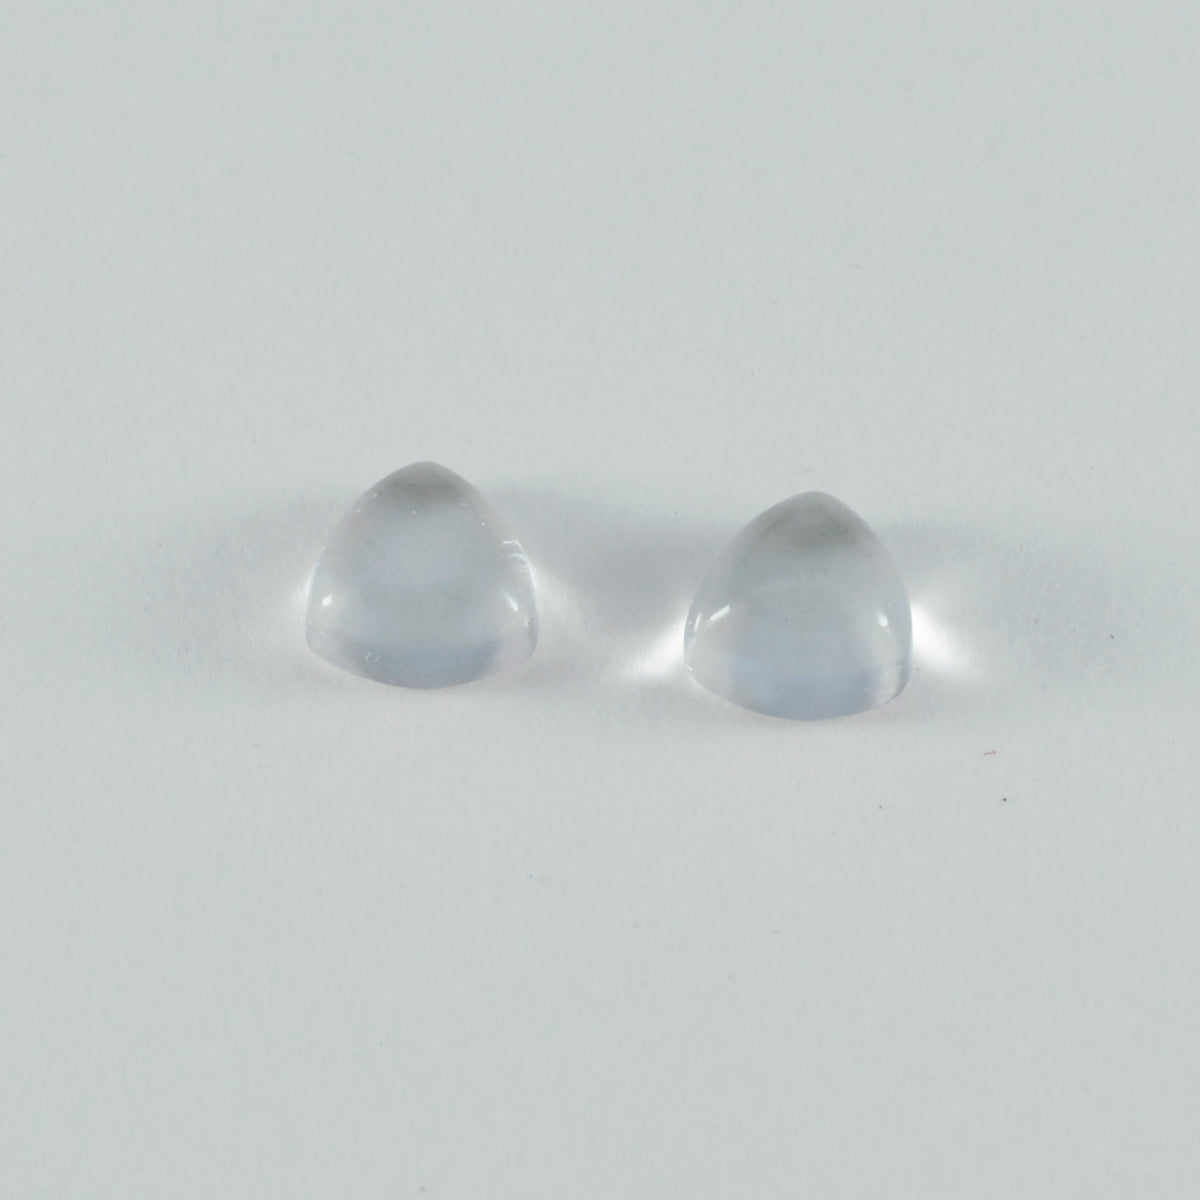 riyogems 1 шт. кабошон из белого кристалла кварца 11x11 мм в форме триллиона потрясающего качества, россыпь драгоценных камней